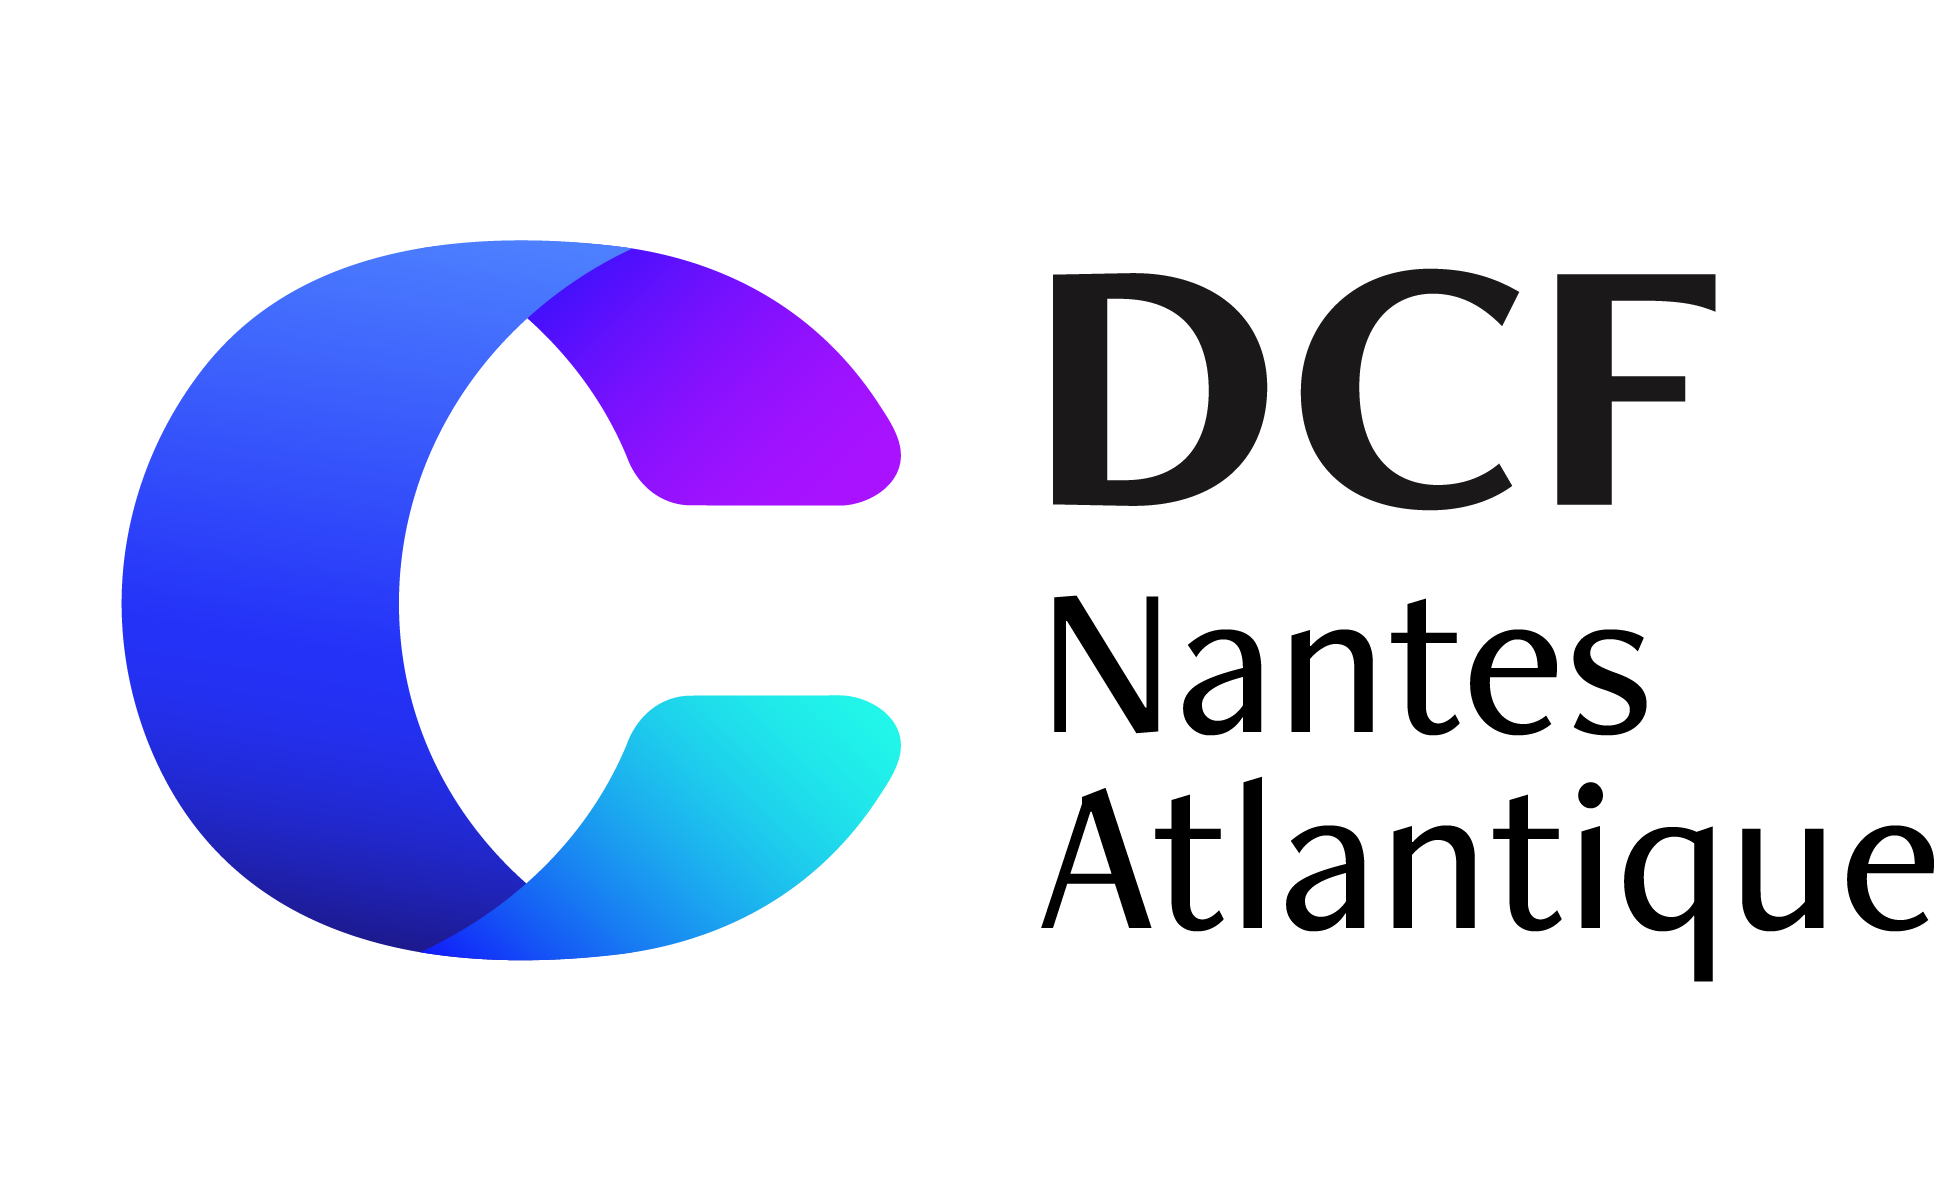 Logo DCF